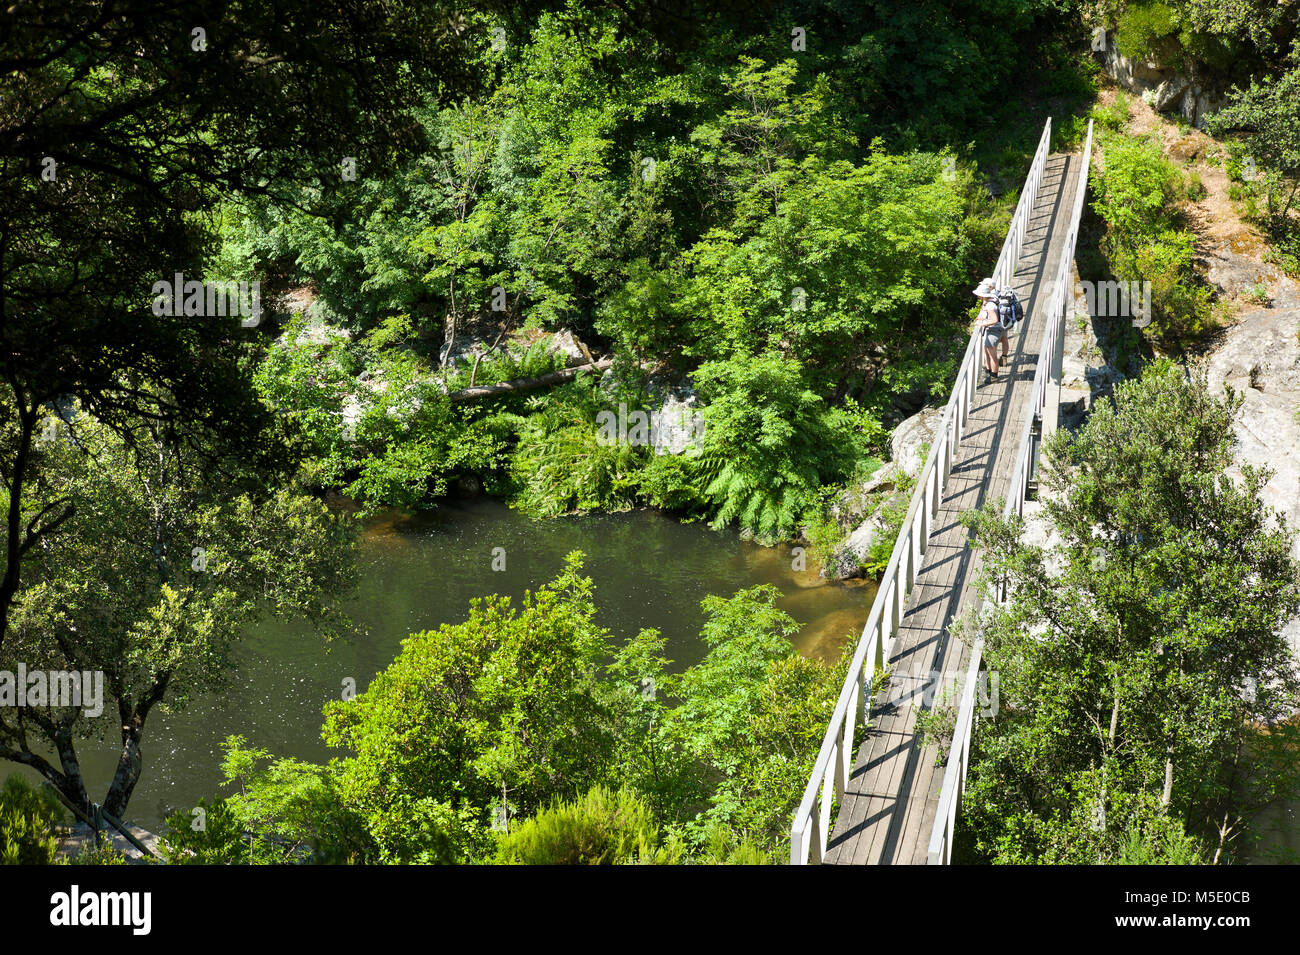 Escursionismo, passeggiate, estate, il ponte sul fiume, acqua, turisti, viaggiatori, legno, boccole, verde Foto Stock